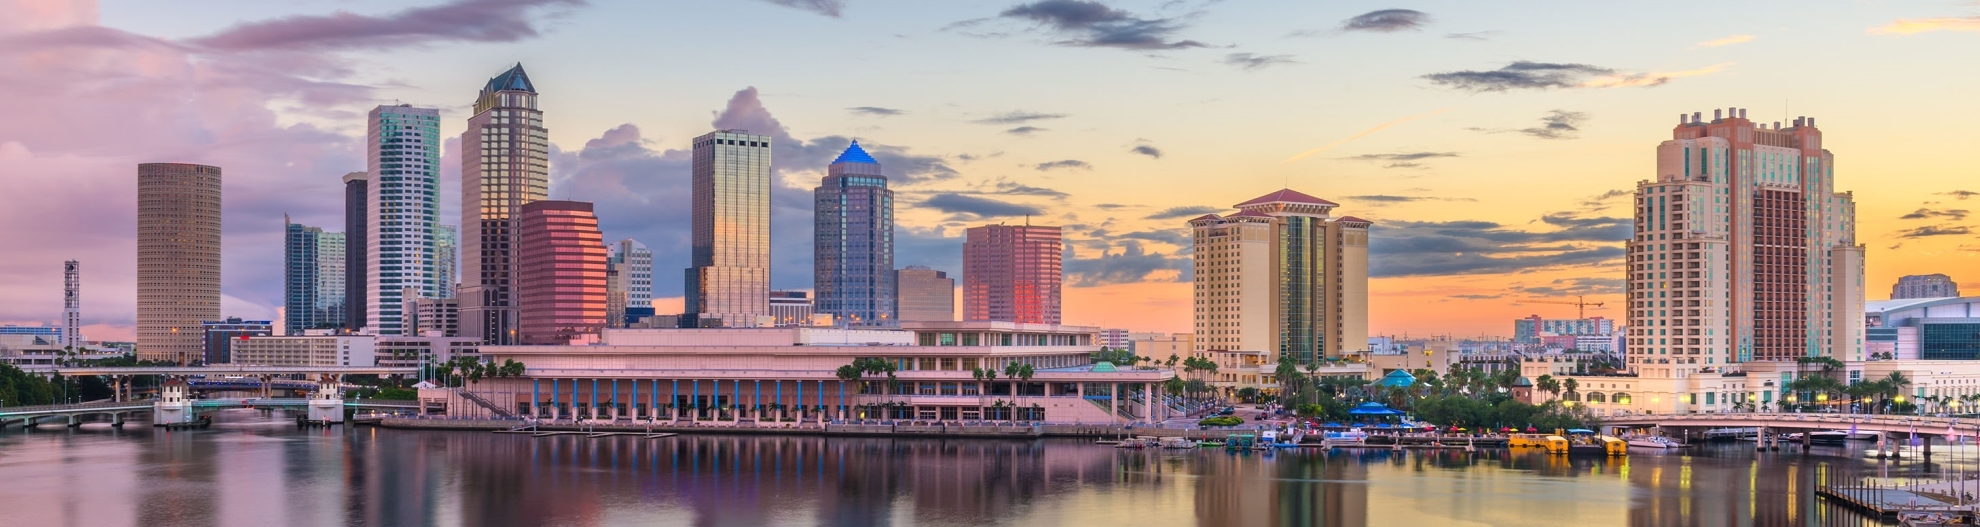 Tampa, Florida, USA downtown skyline on the ba